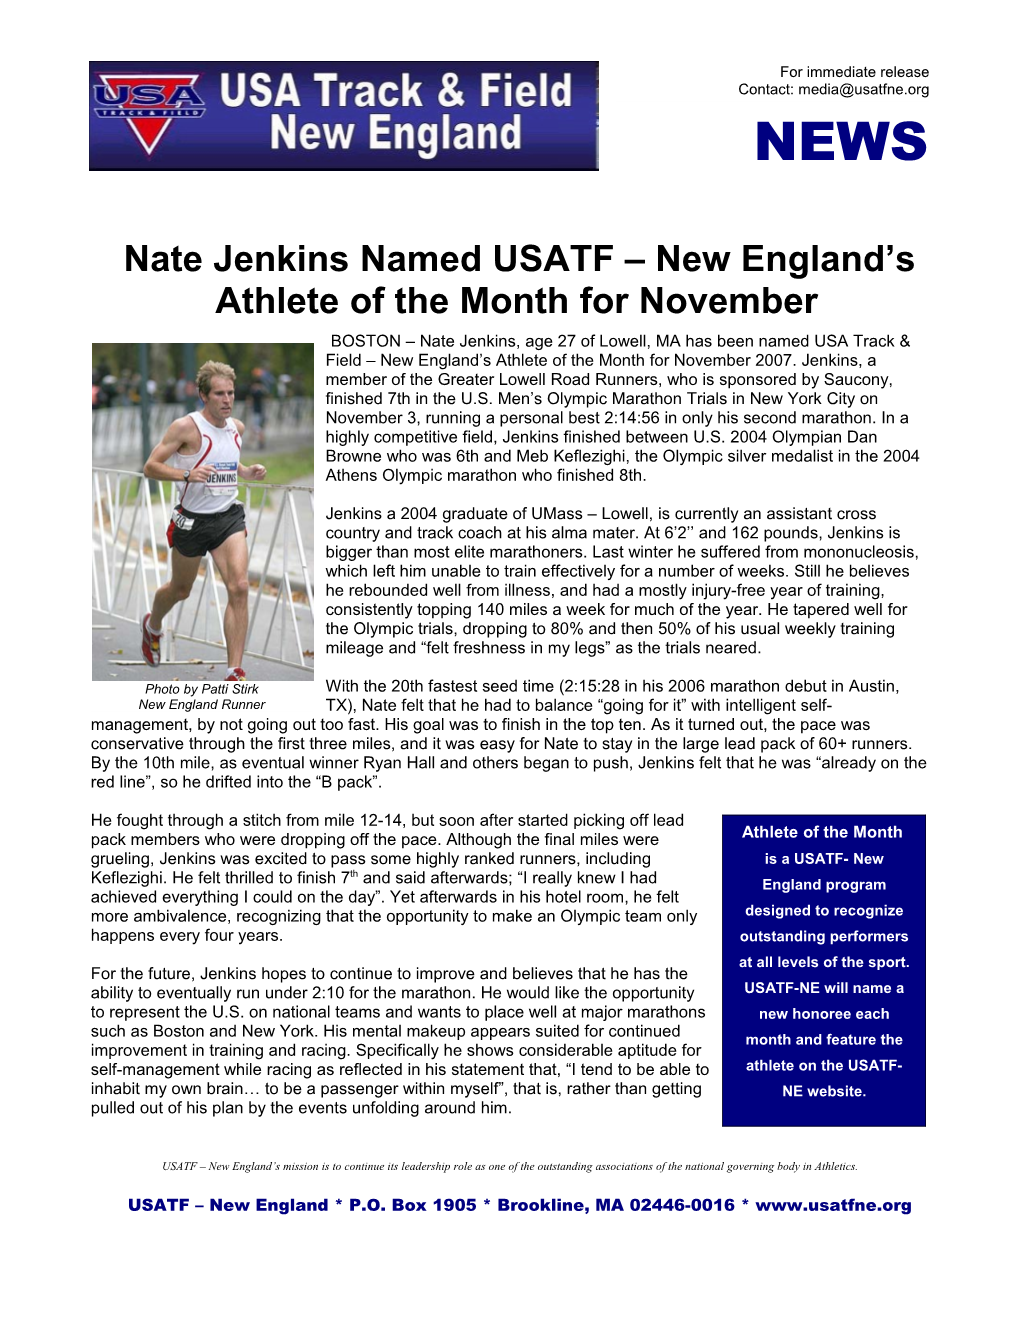 USATF-NE Athlete of the Month for November 2007